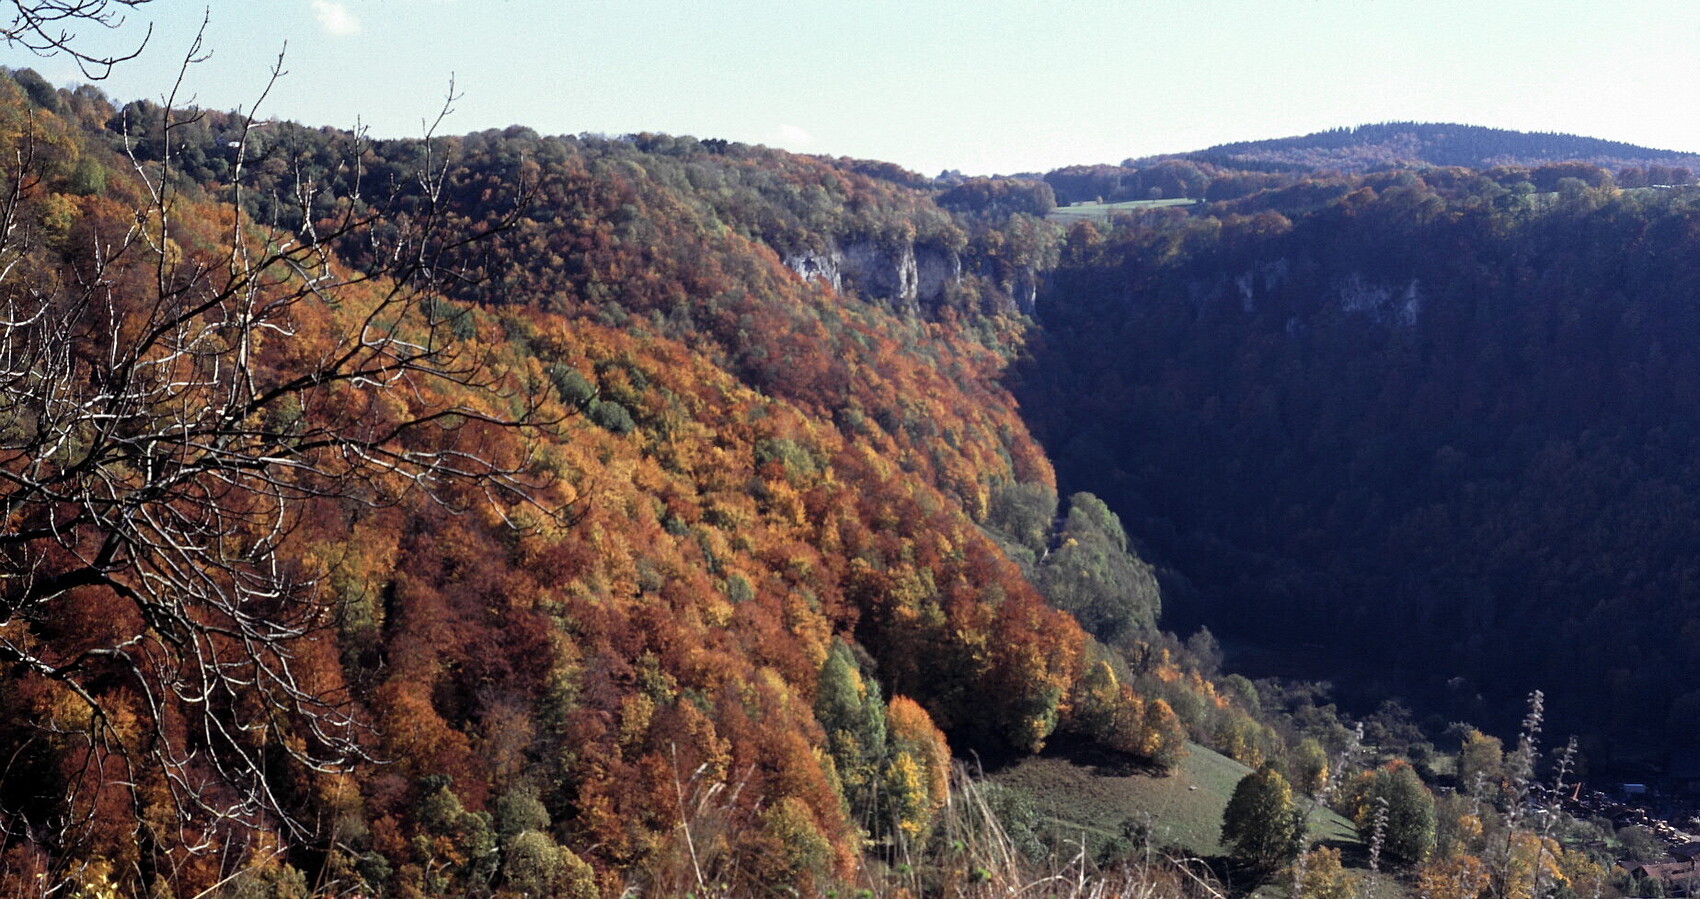 Naturschutzgebiet Oberes Lenninger Tal mit Buchenwäldern, Magerrasen und Felsen.